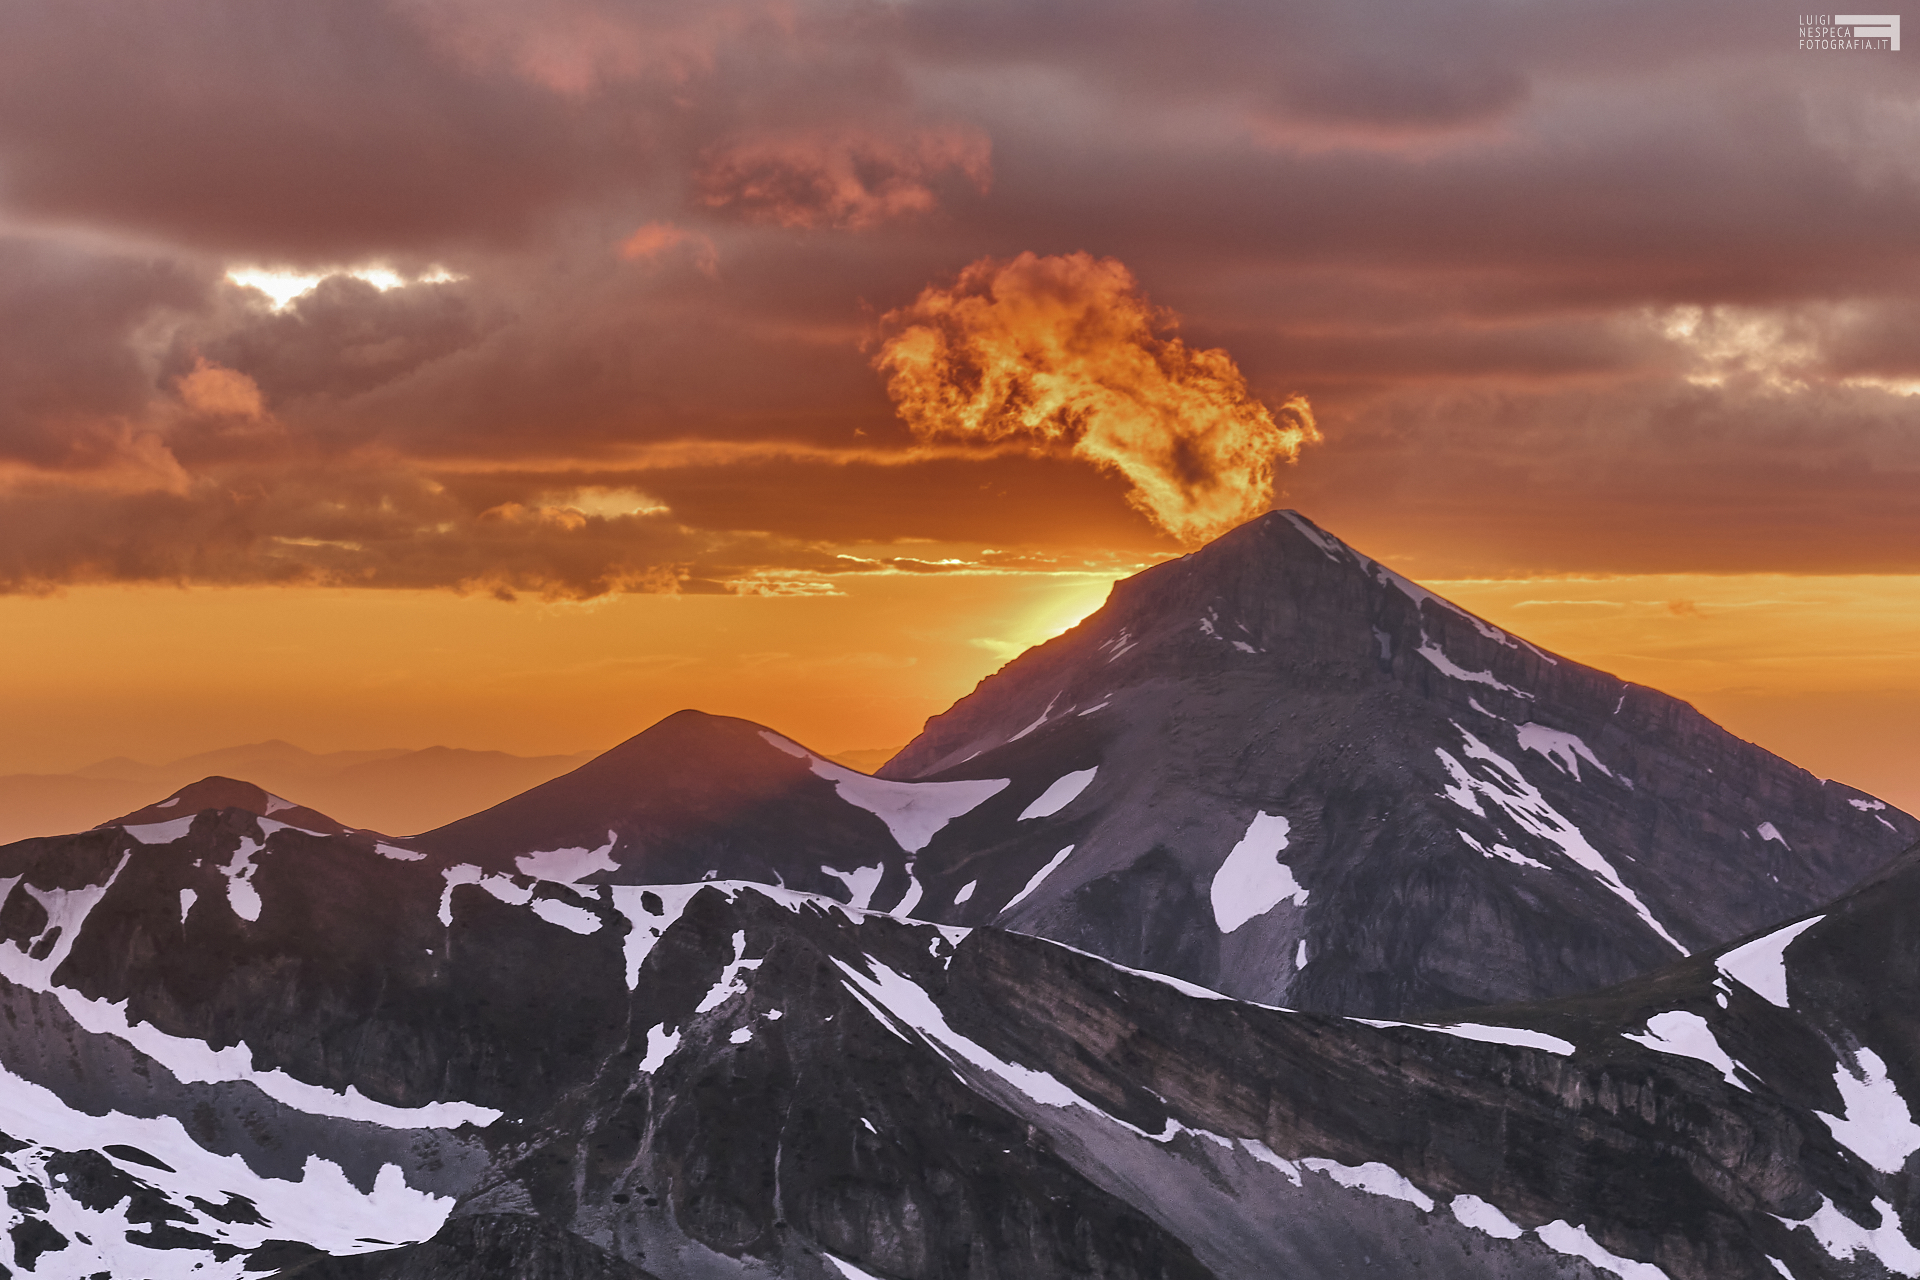 Giugno 2021 - Monte Corvo fuma come un vulcano - GRAN SASSO